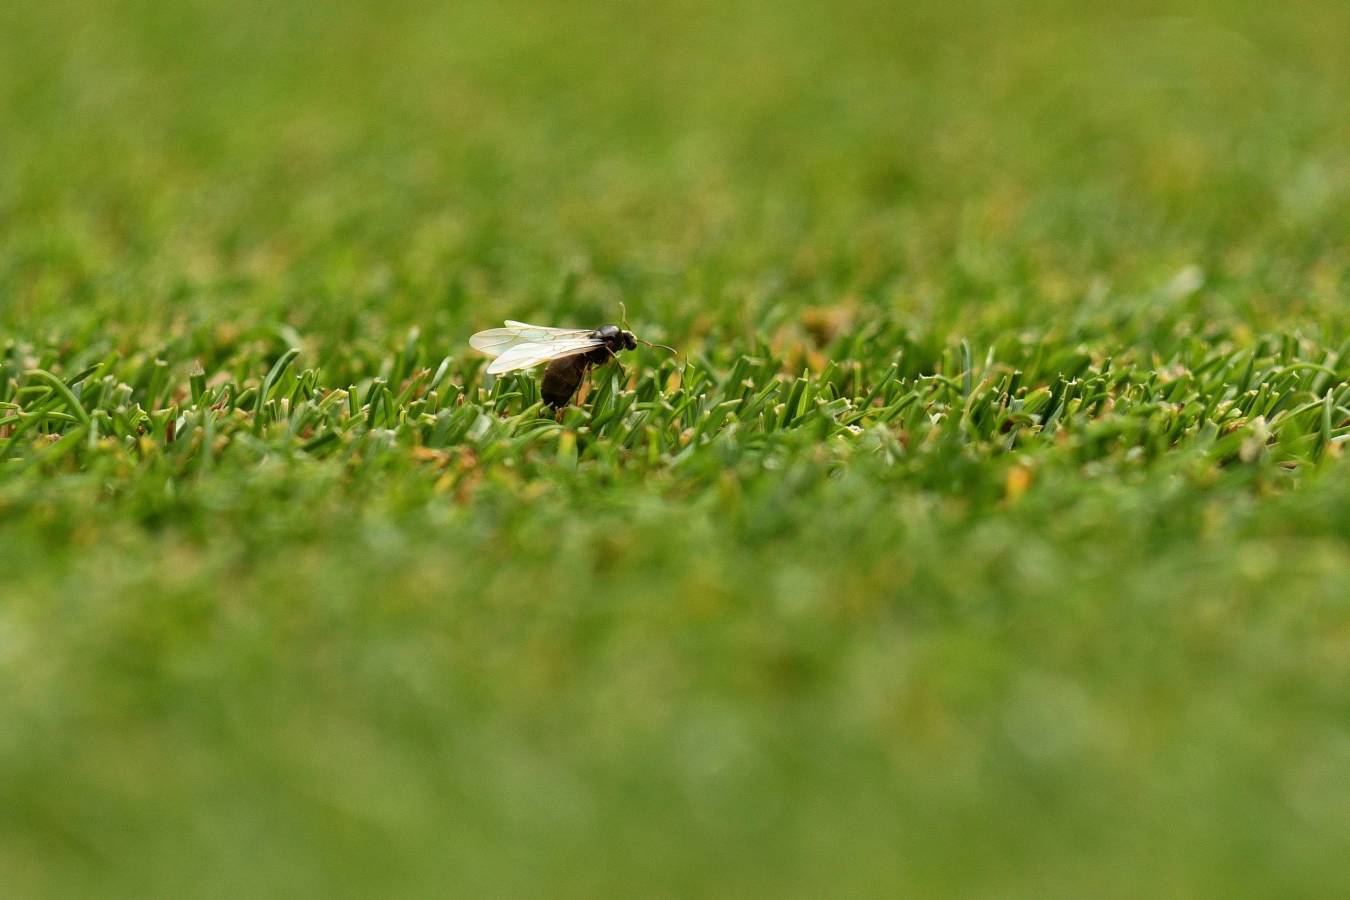 Varios tenistas que están disputando el prestigioso torneo de Londres se han visto perjudicados por la presencia de hormigas sobre las pistas de hierba.